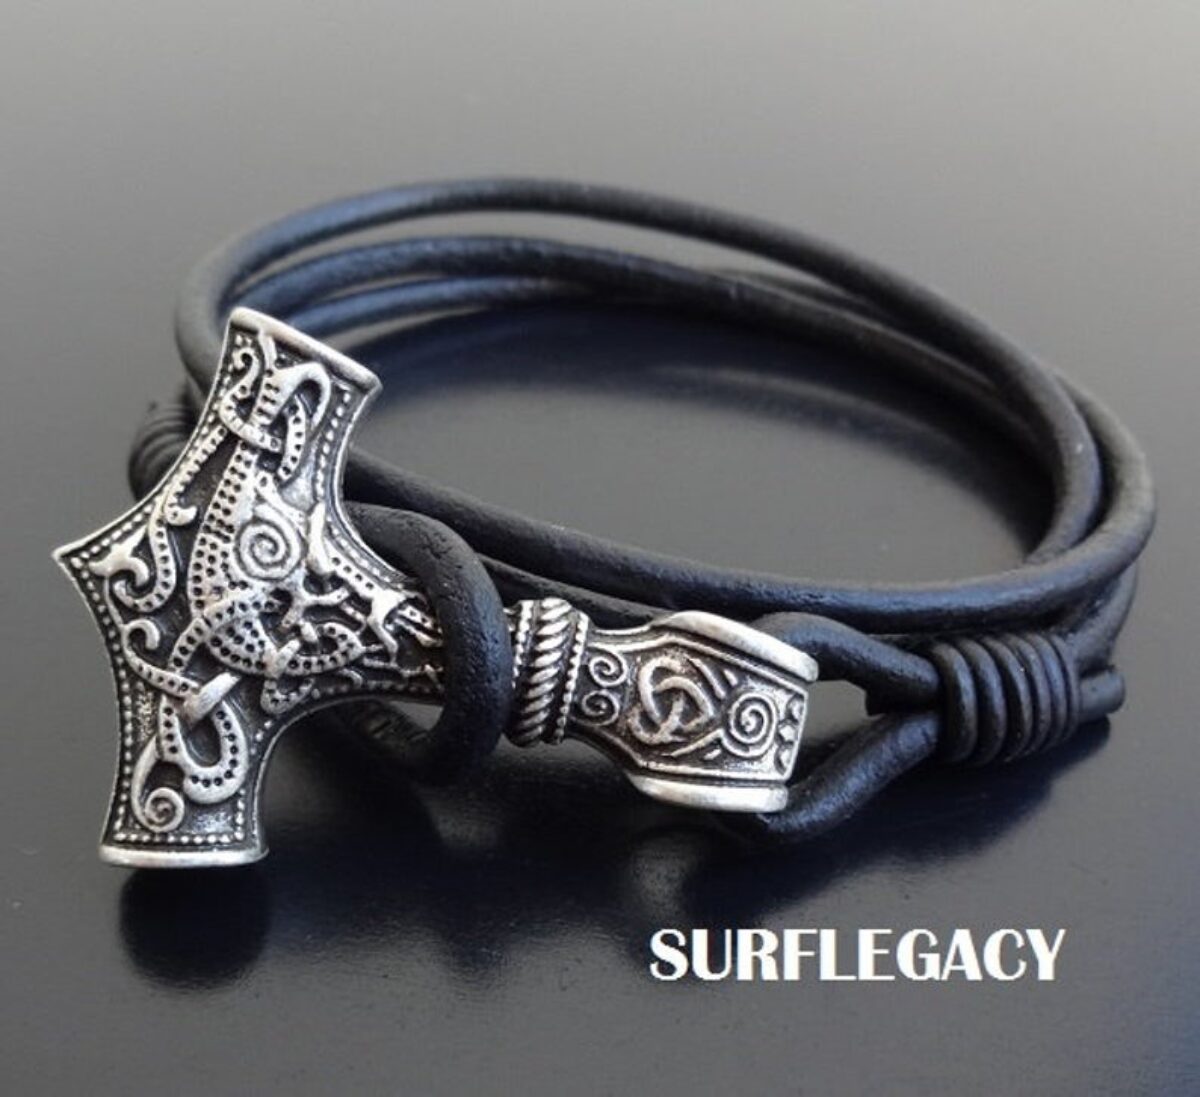 Mjolnir Rune Bracelet Handmade Mens  Womens Bracelet Gift Wristband Black & Silver THORS HAMMER Viking Bracelet with Runes